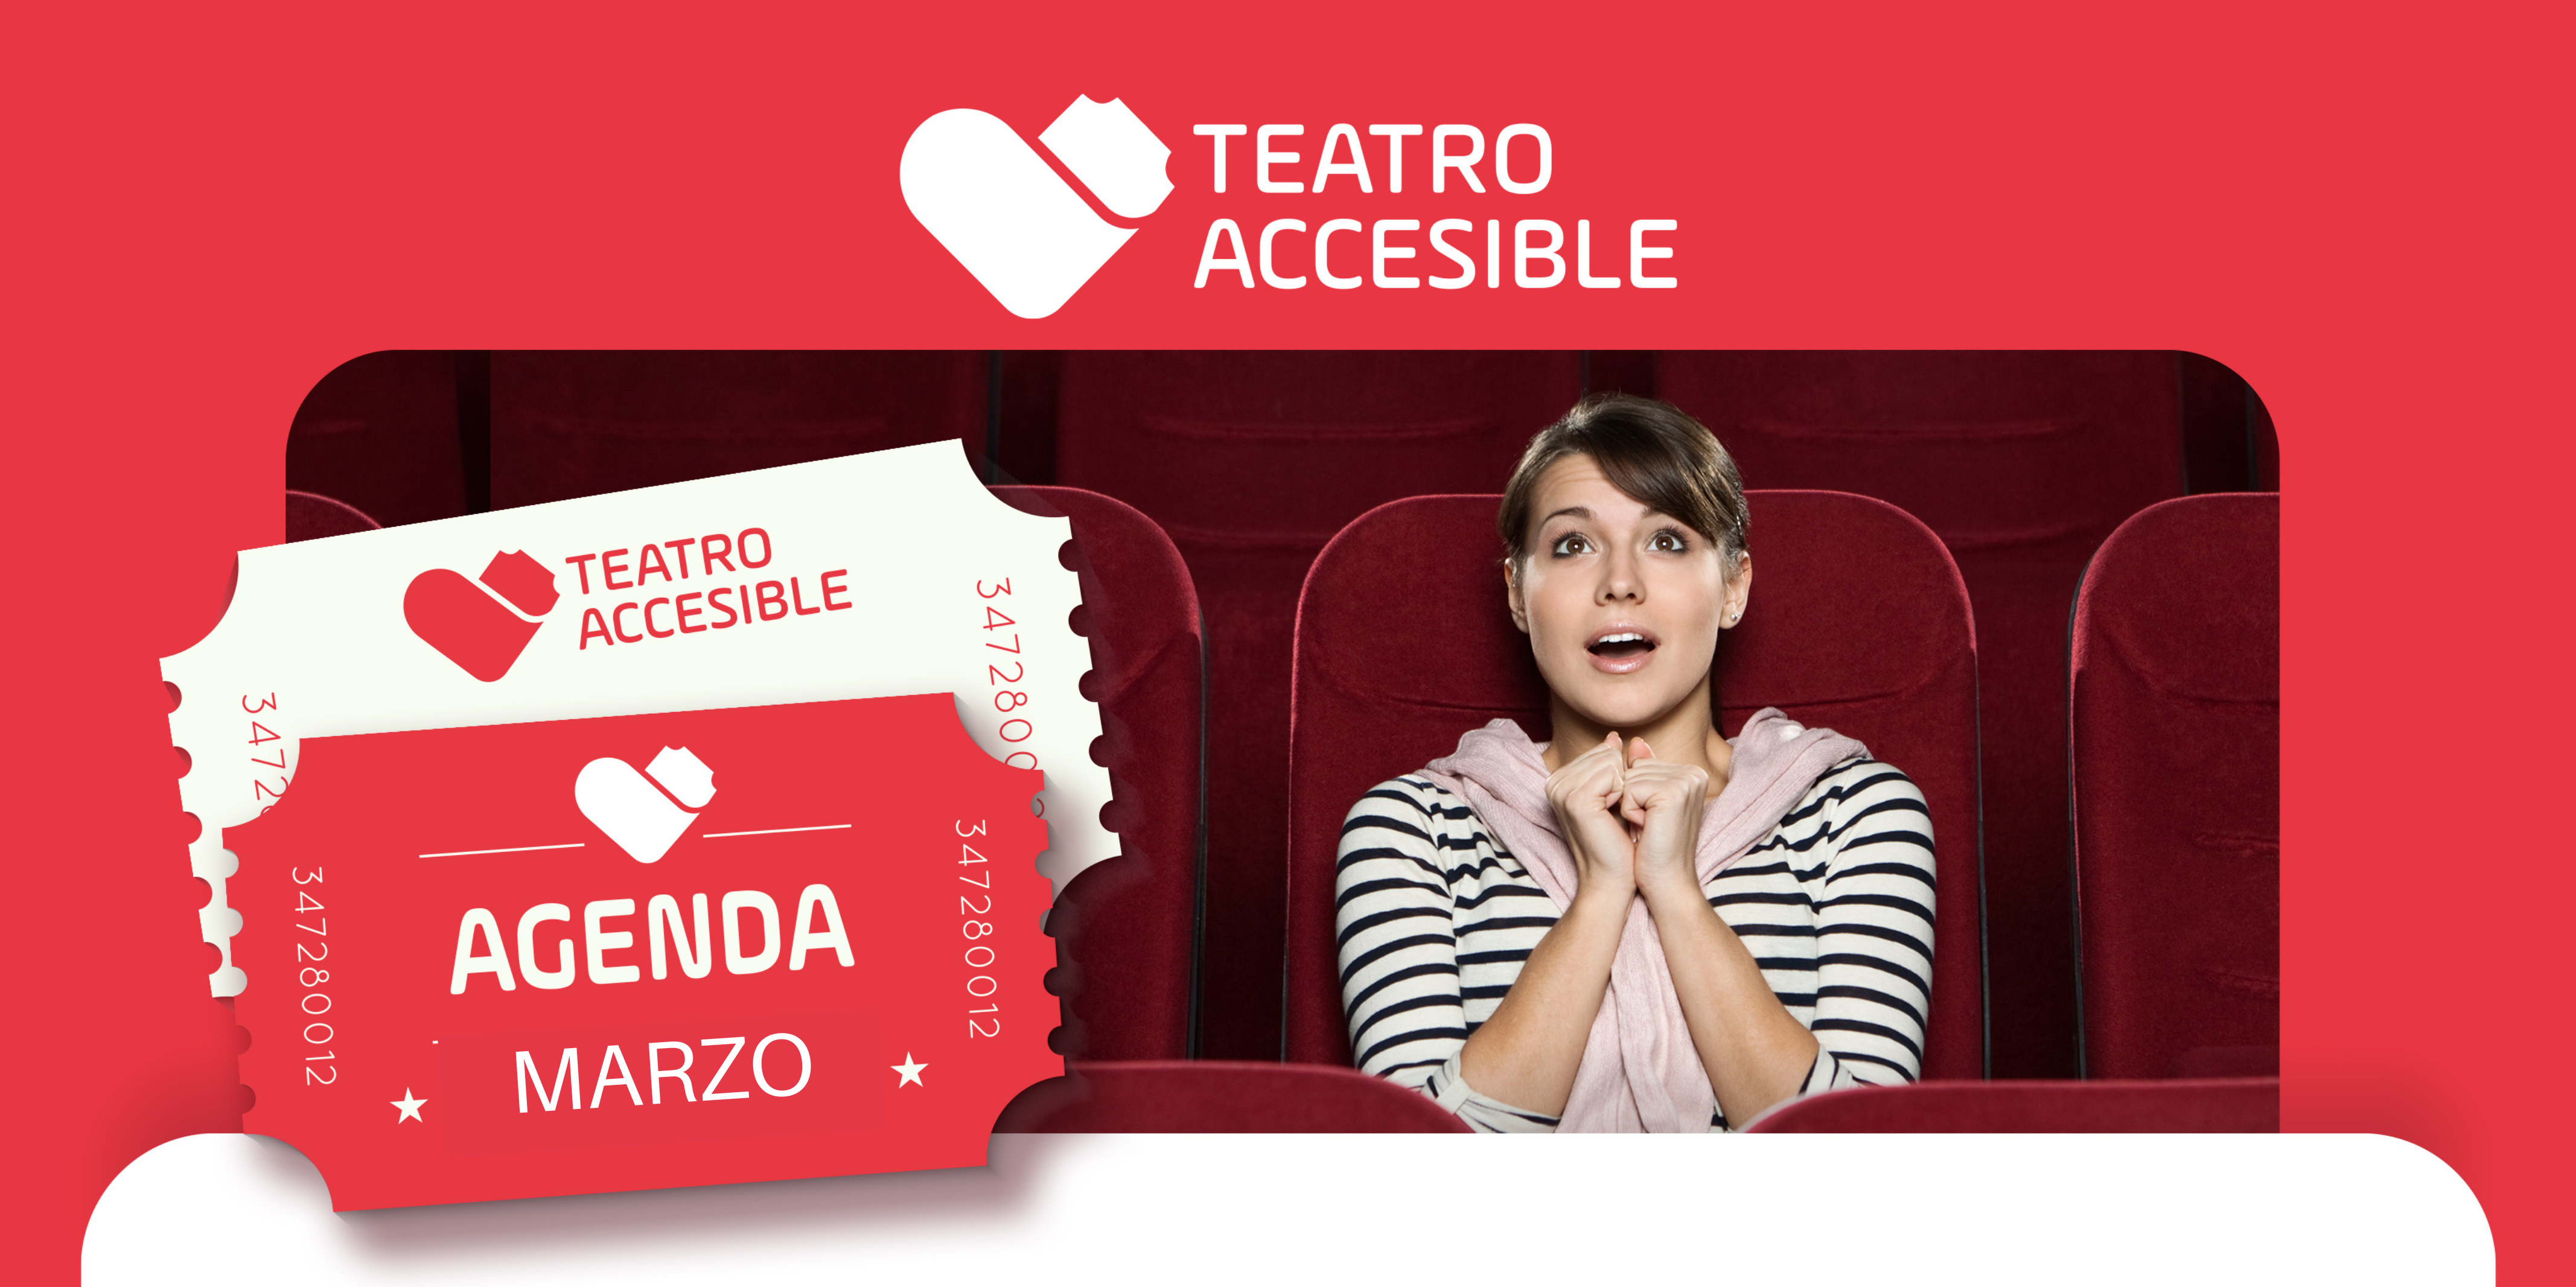 Agenda de Teatro Accesible en marzo.